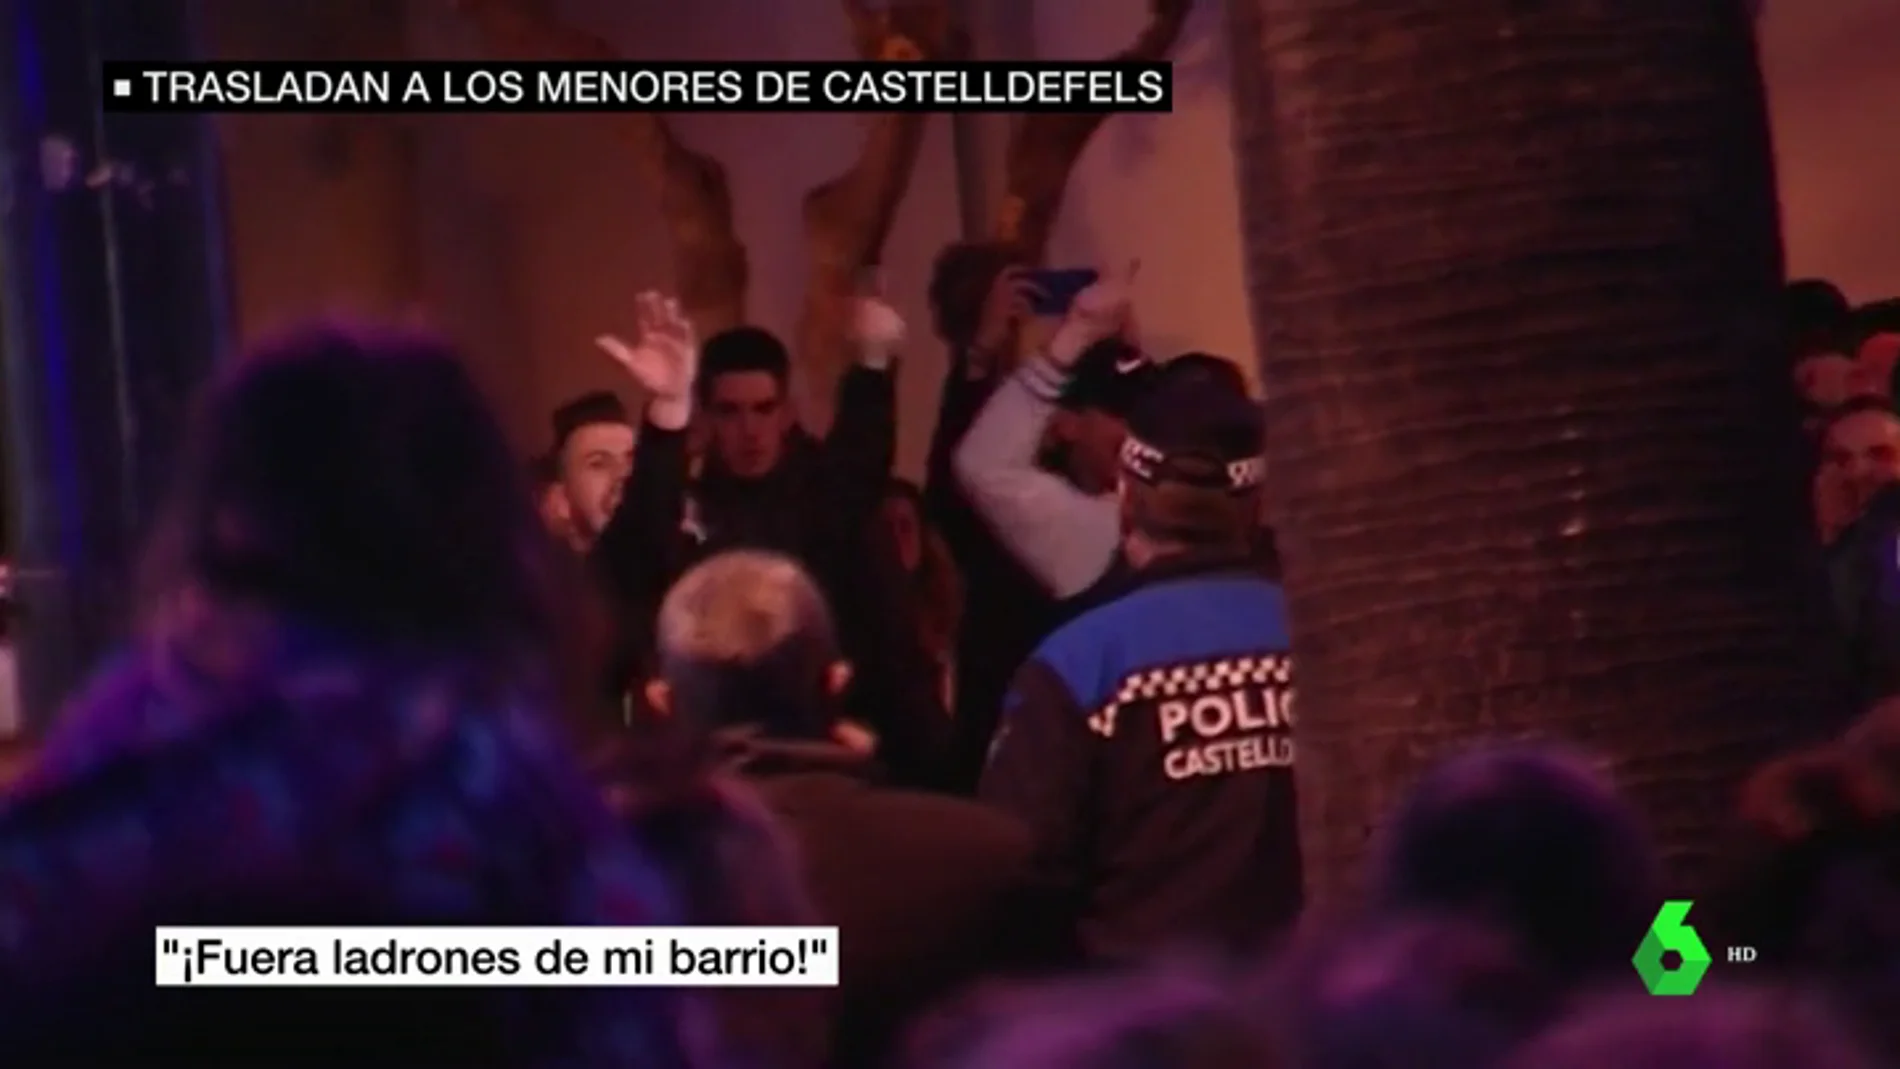 La situación de los menores migrantes divide a los vecinos de Castelldefels